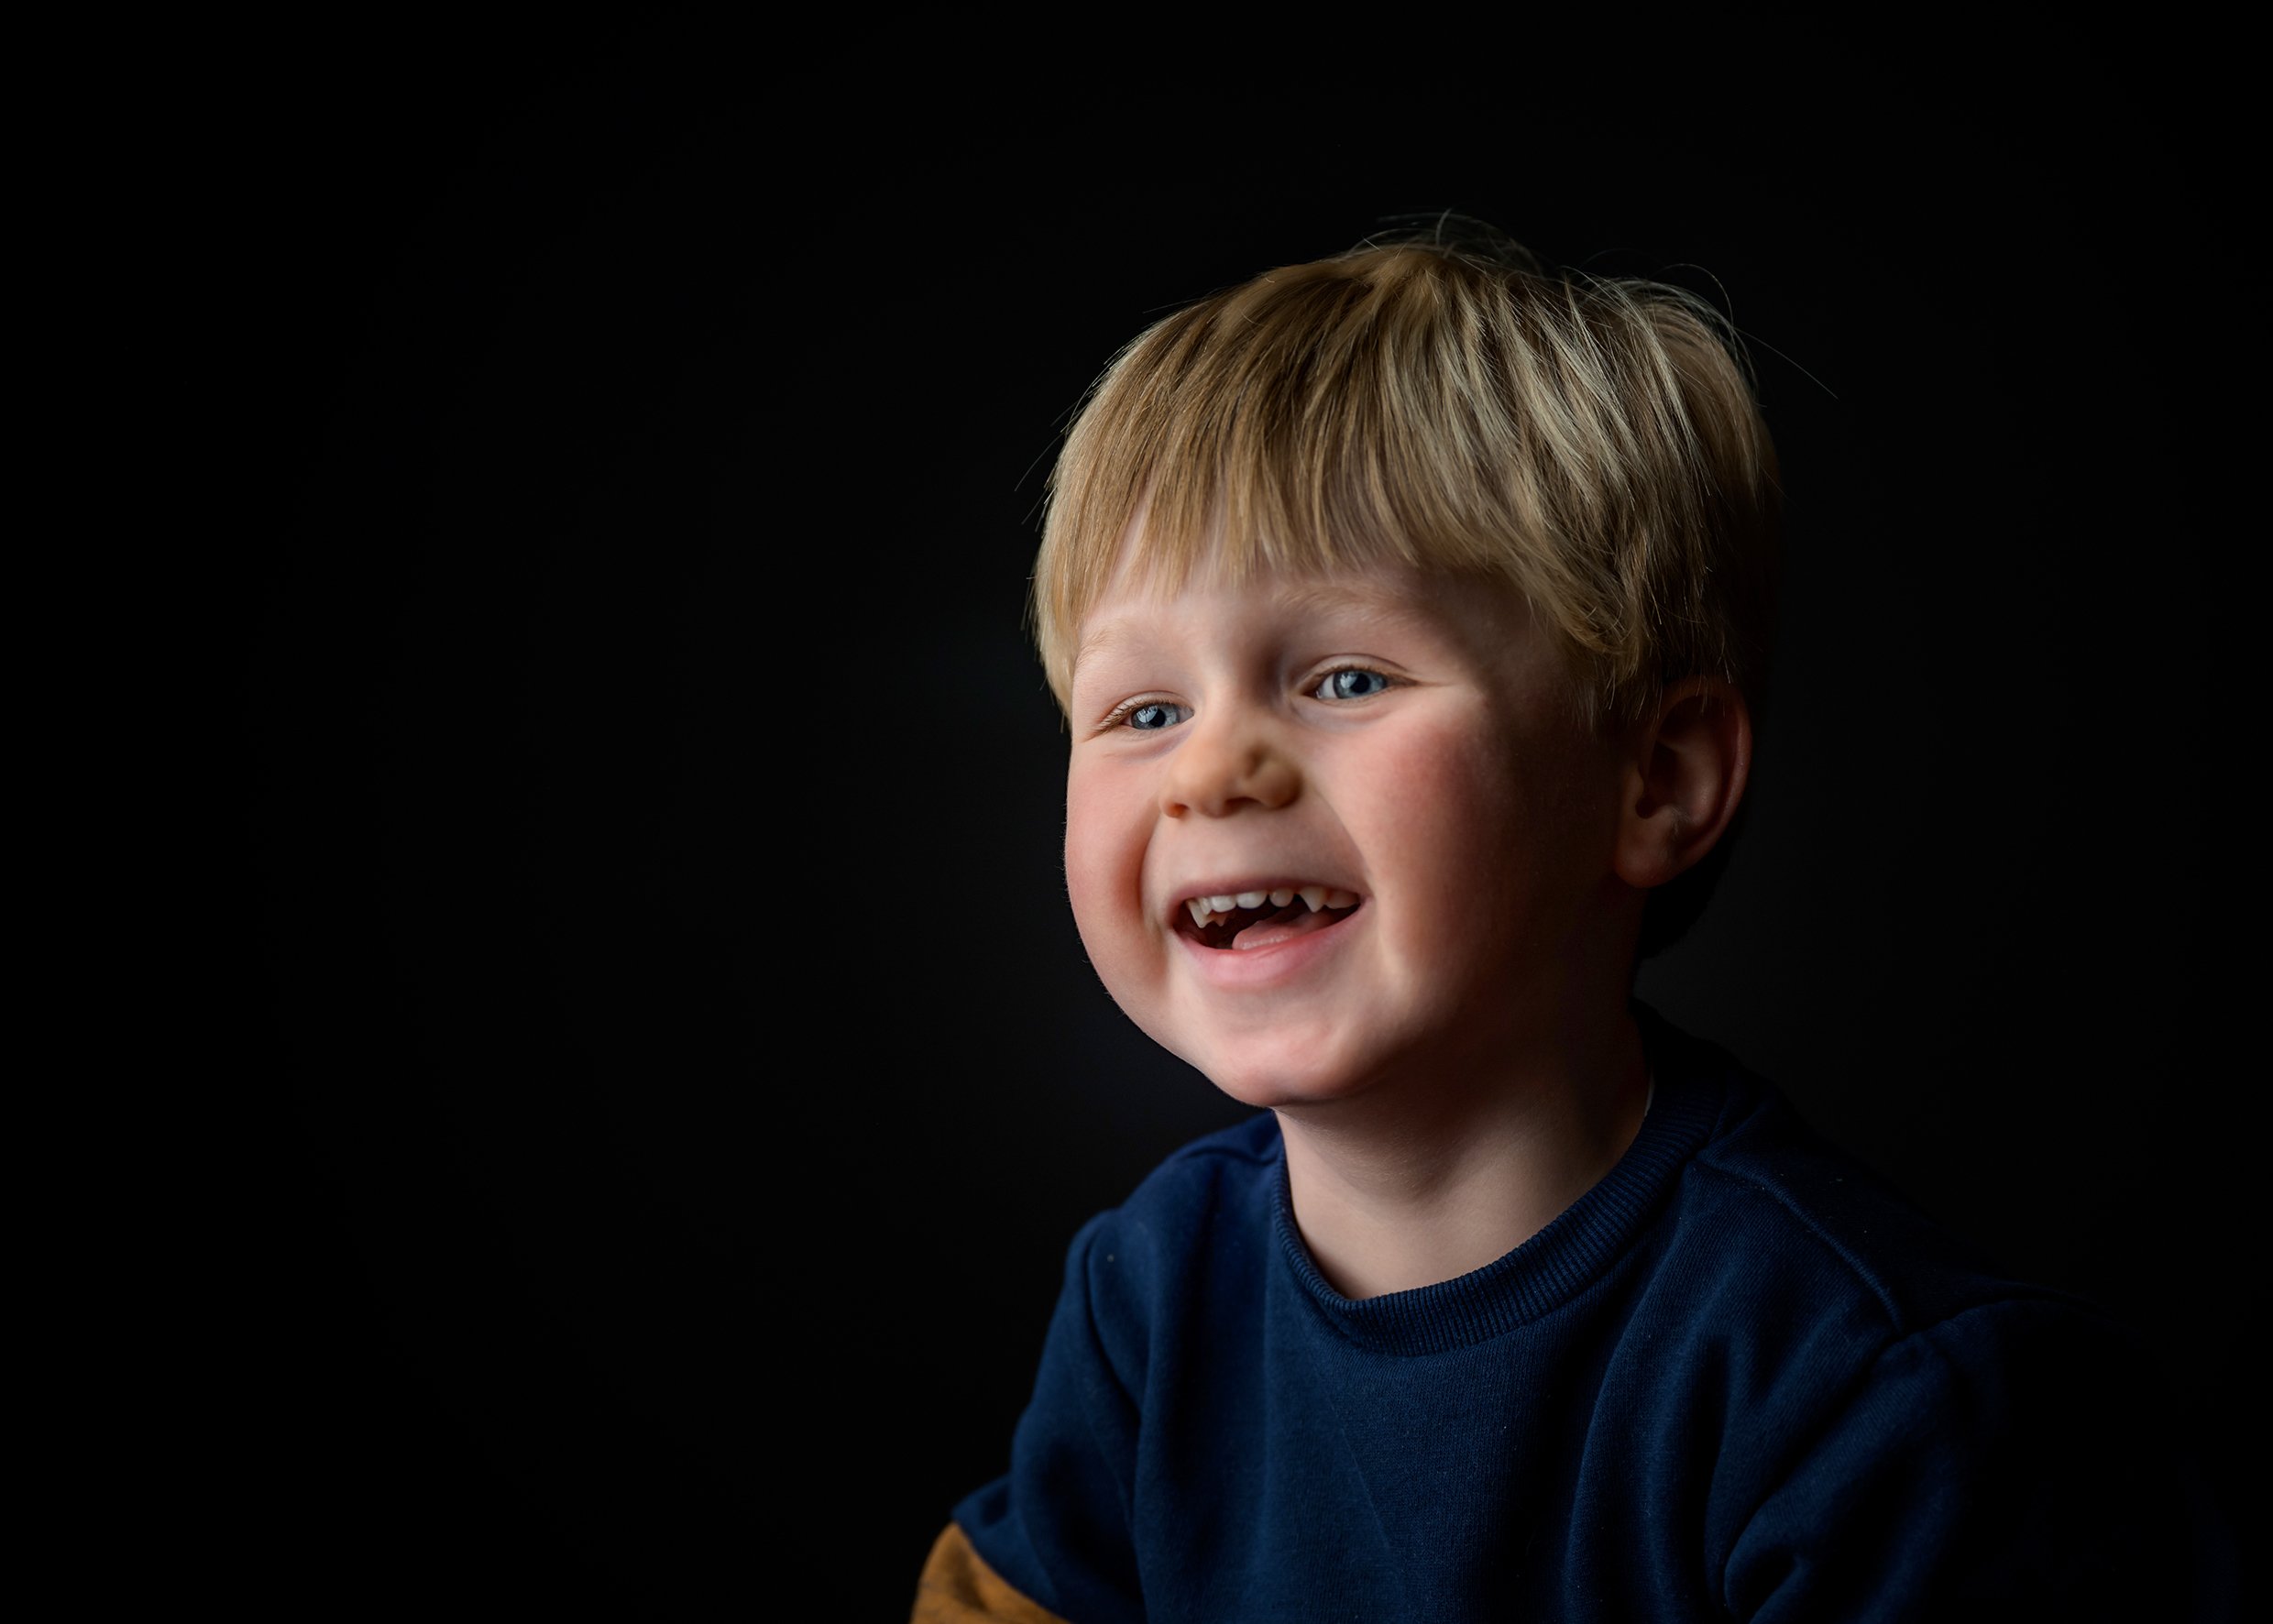  Zoekt u een kinder fotograaf? gespecialiseerd in portret fotografie 